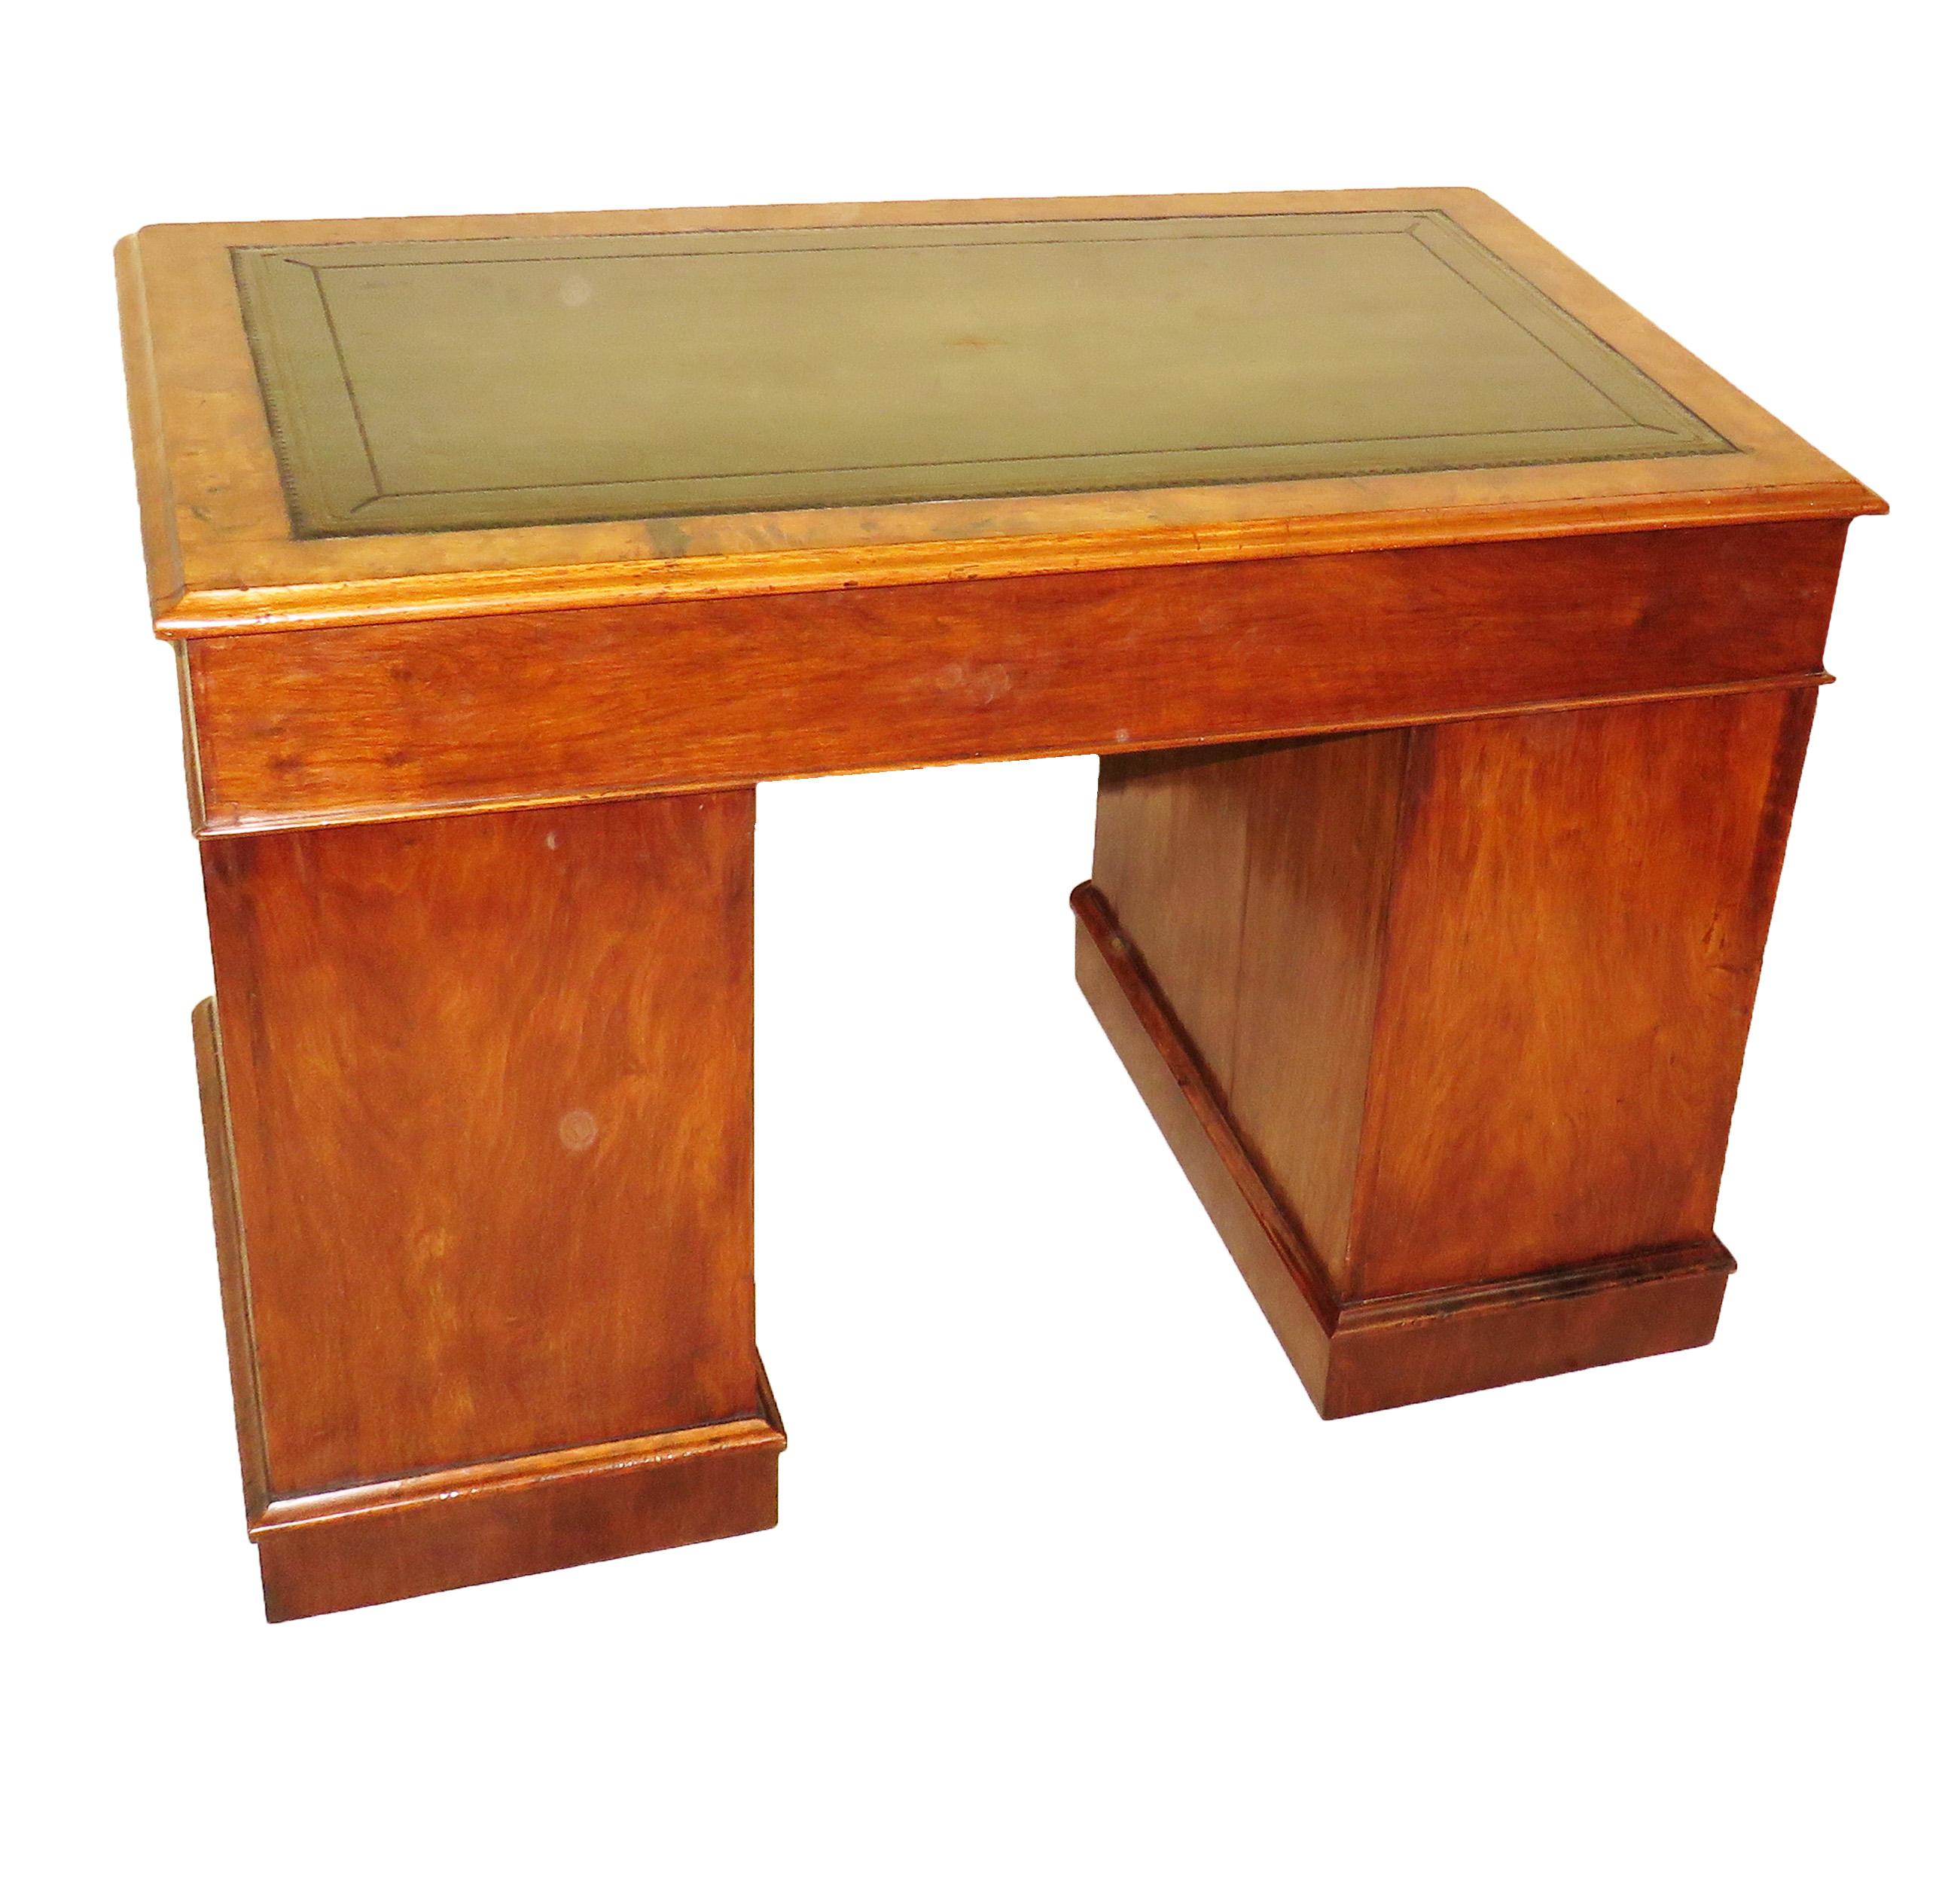 Burr Walnut 19th Century Antique Pedestal Desk (Englisch)